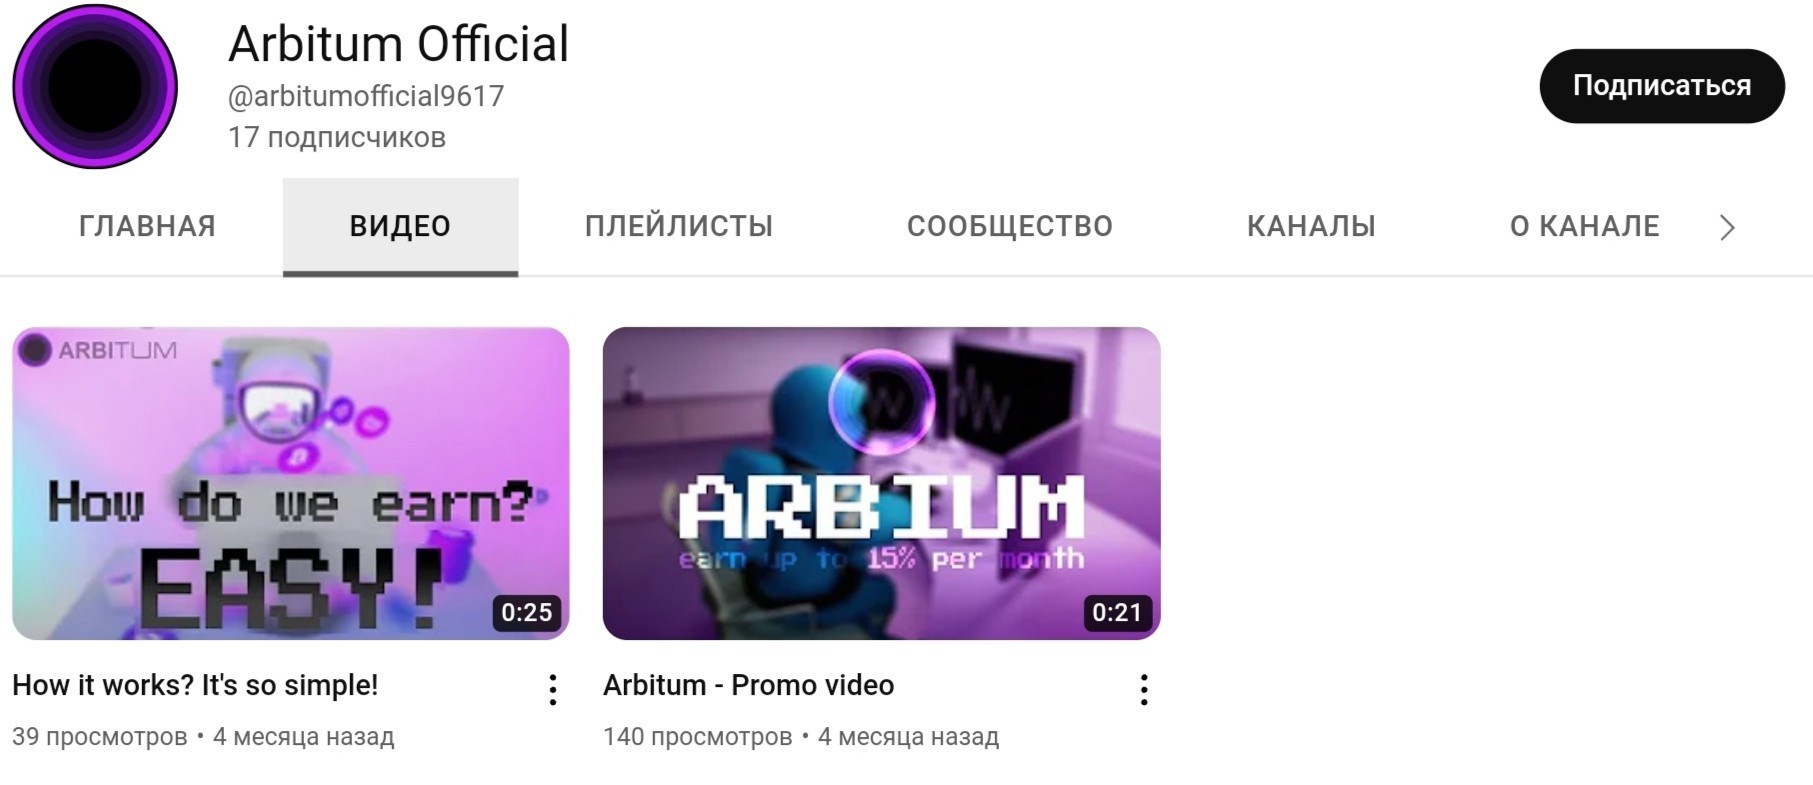 Ютуб канал проекта Arbitum